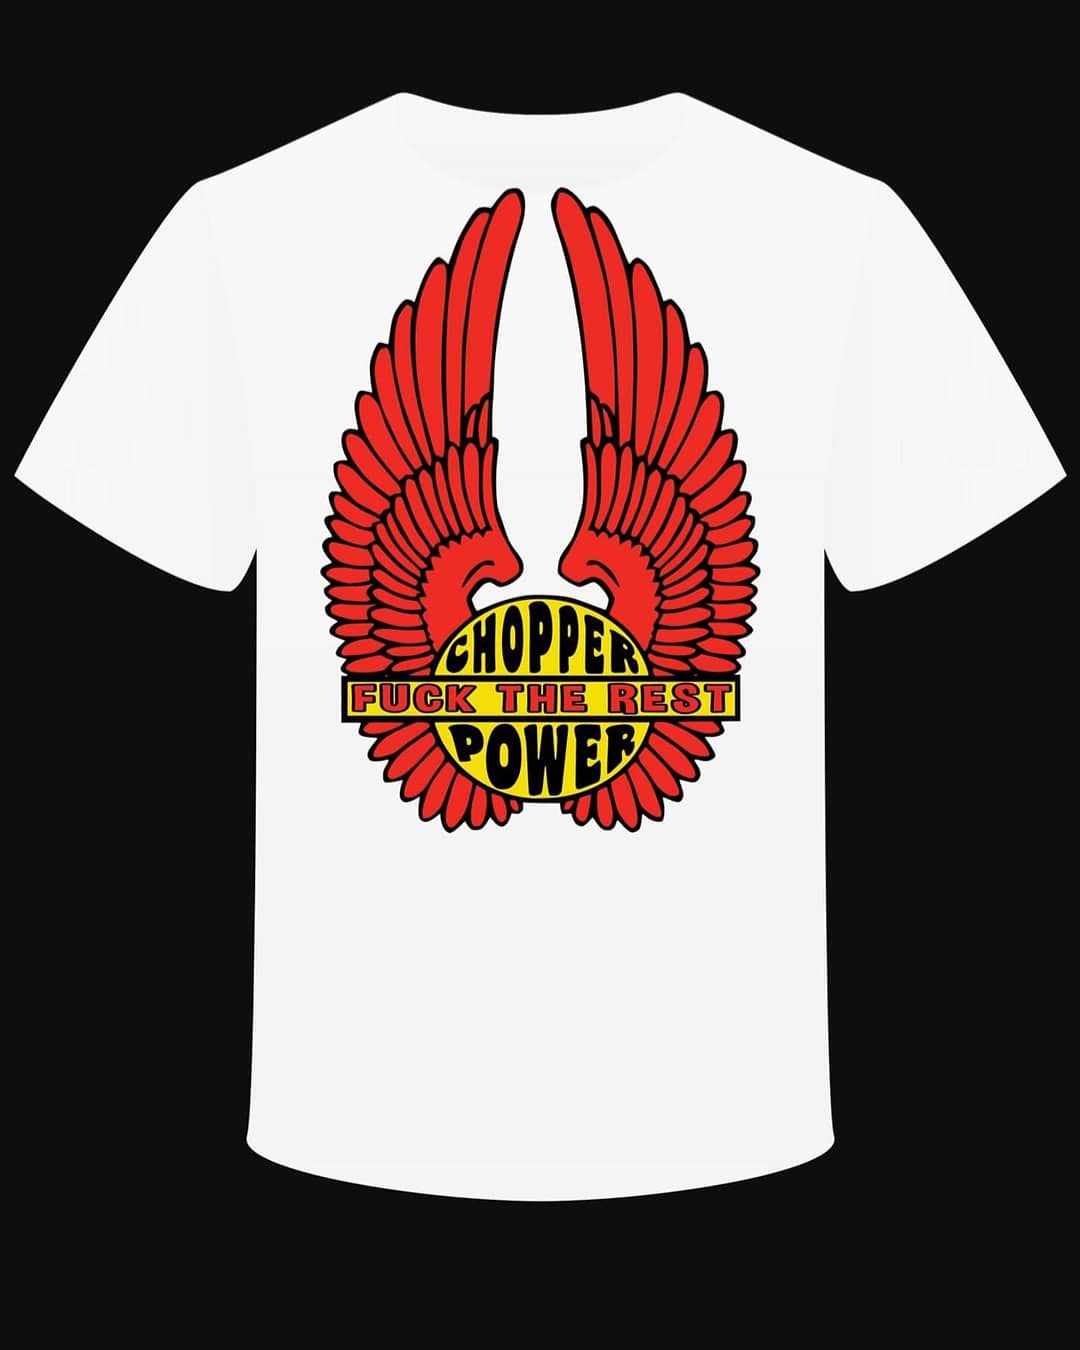 T-shirt "Chopper Power Fuck the Rest"